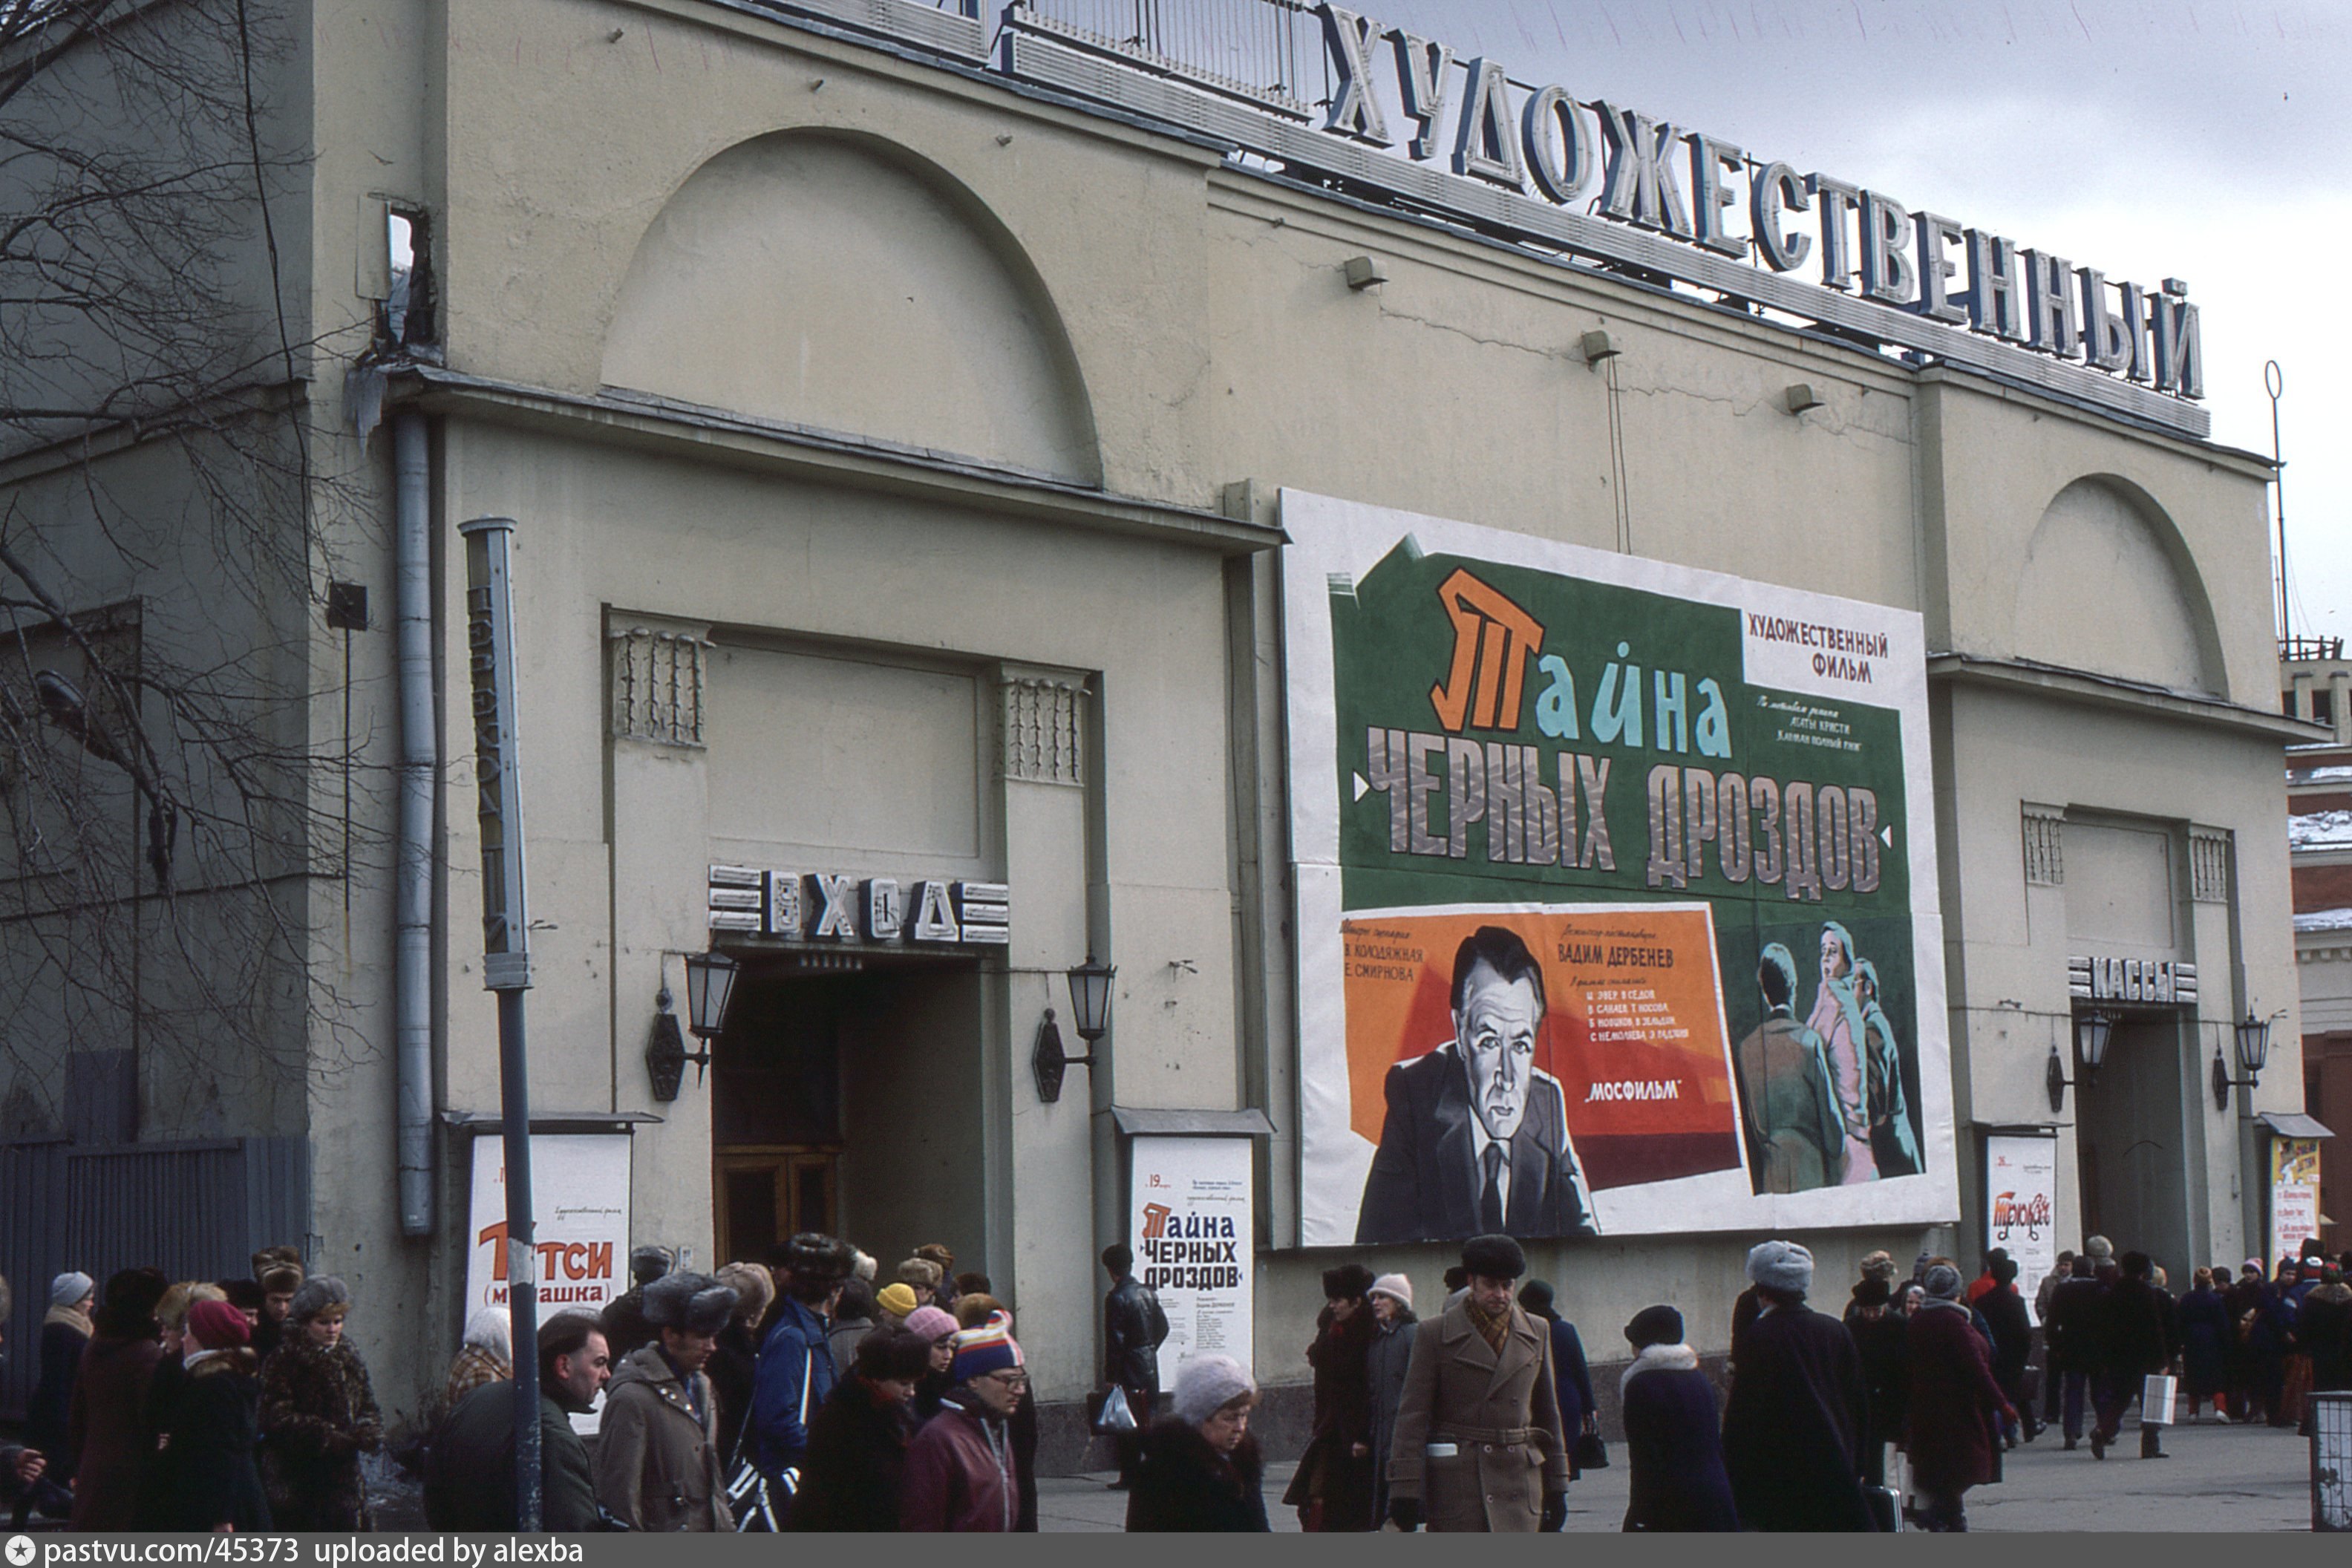 Кинотеатр советское луч афиша